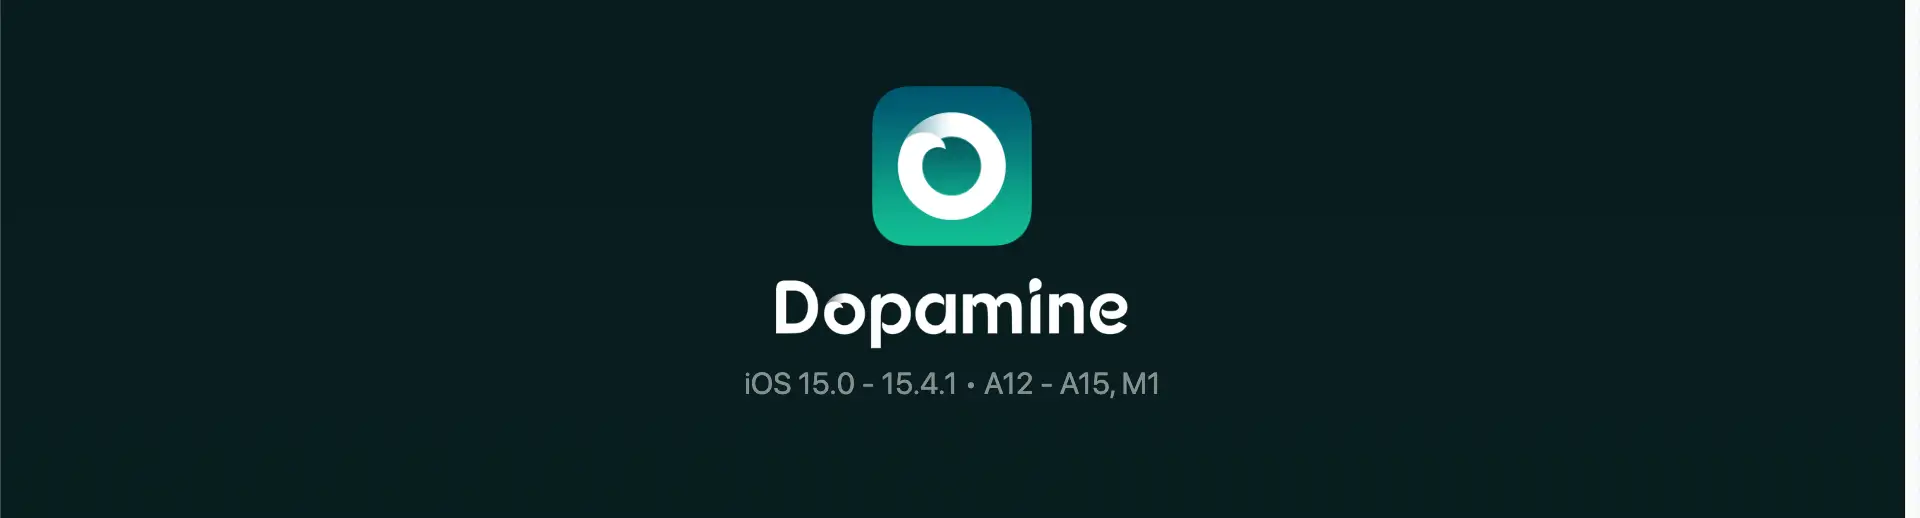 Dopamine Jailbreak random reboots issue is being worked on! iOS 15.0 – 15.4.1 Dopamine Jailbreak News